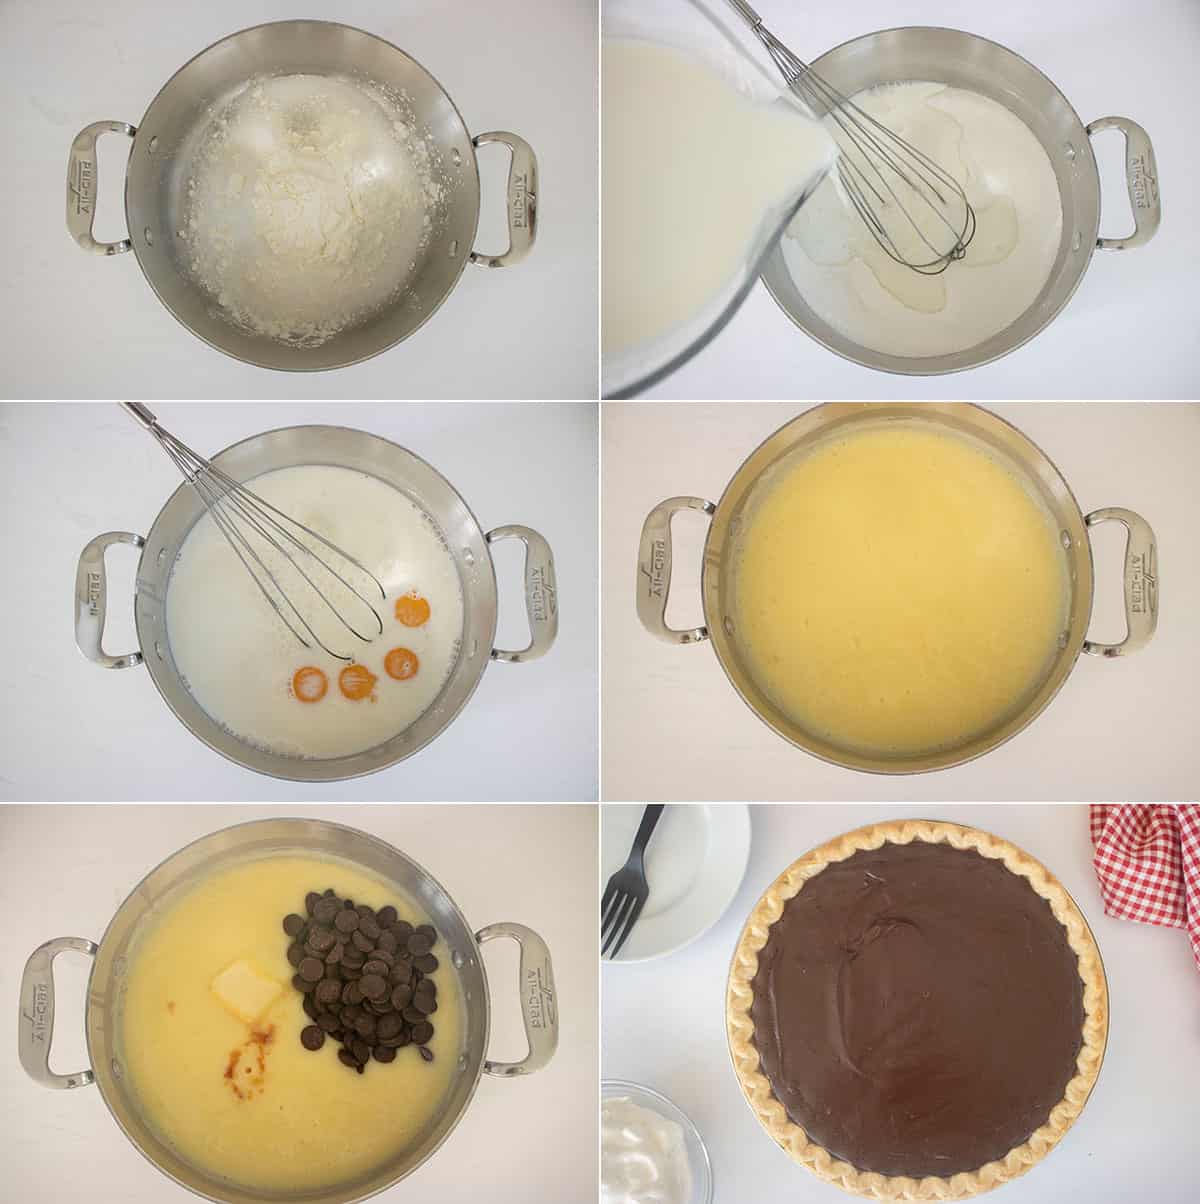 How to make grandmas chocolate pie